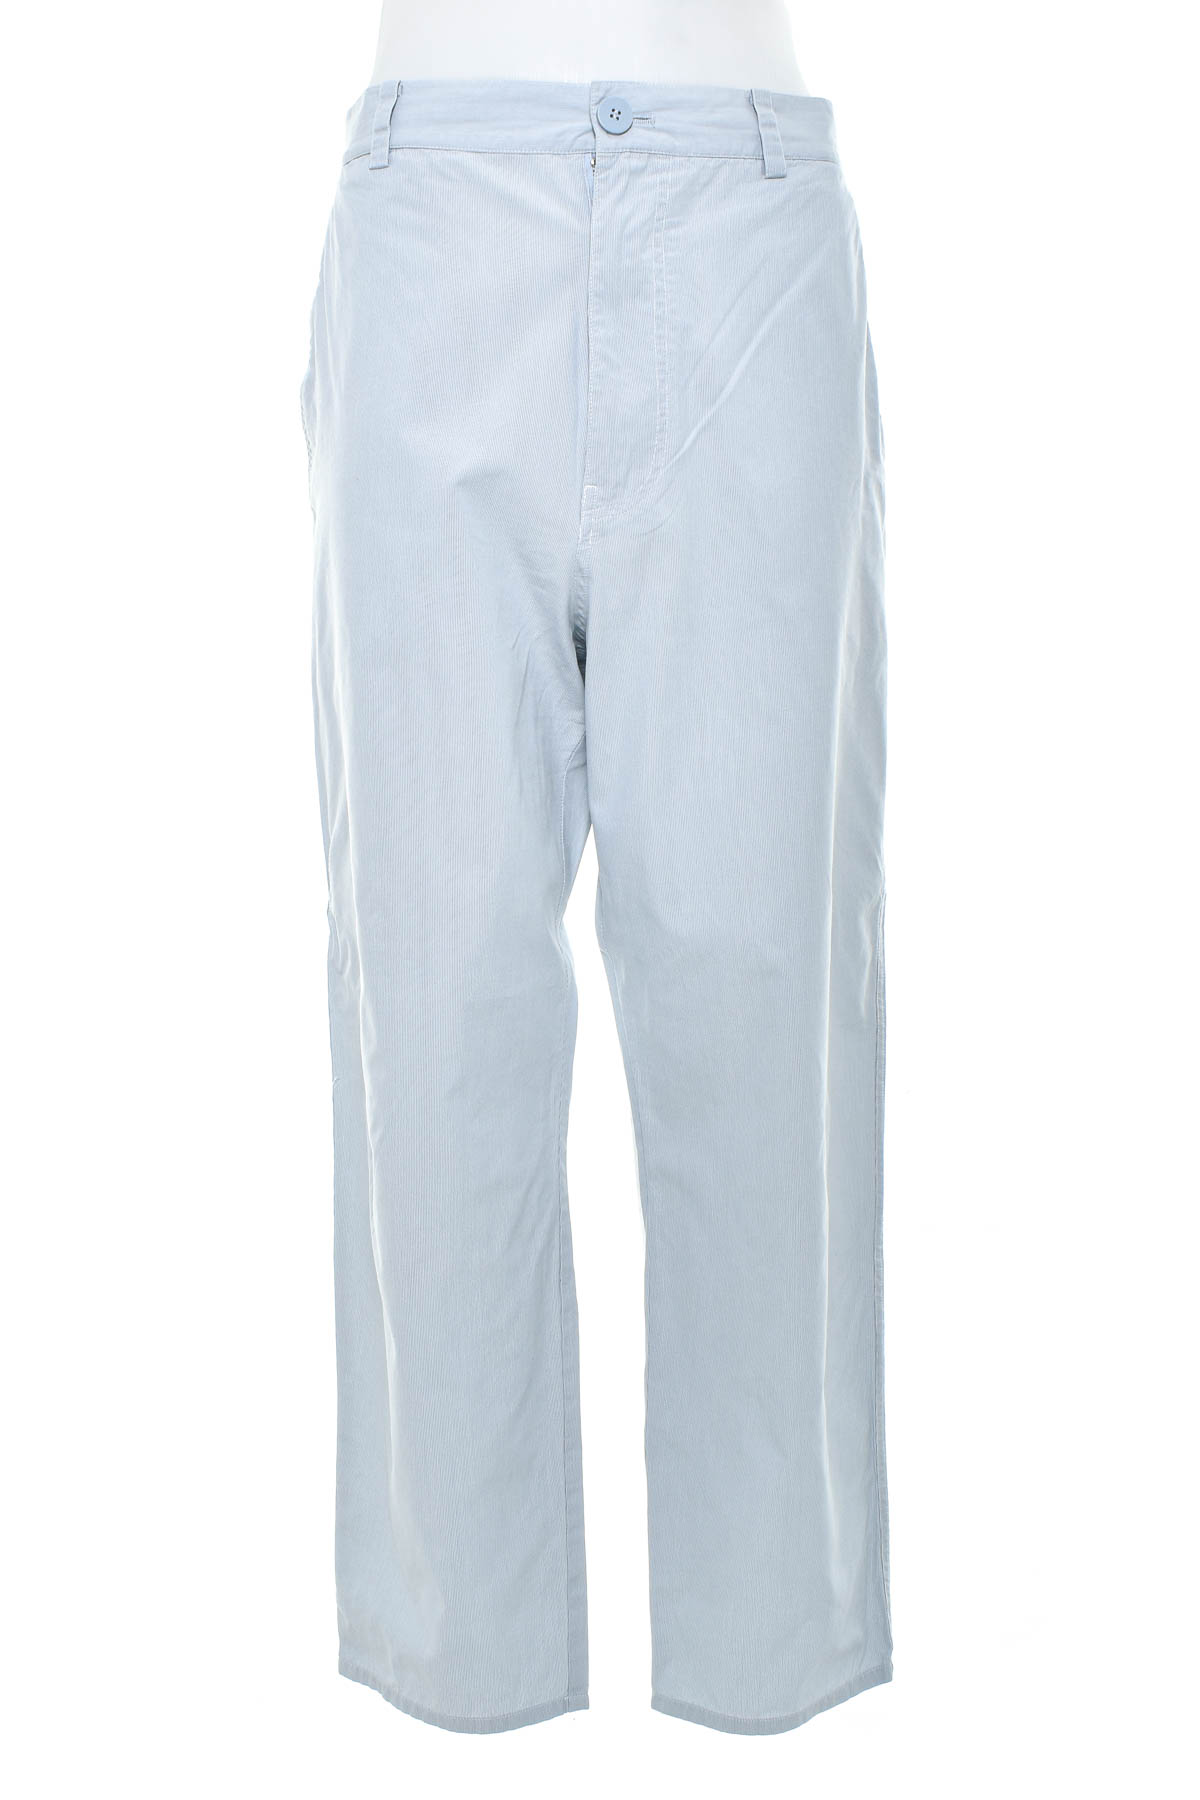 Men's trousers - COS - 0